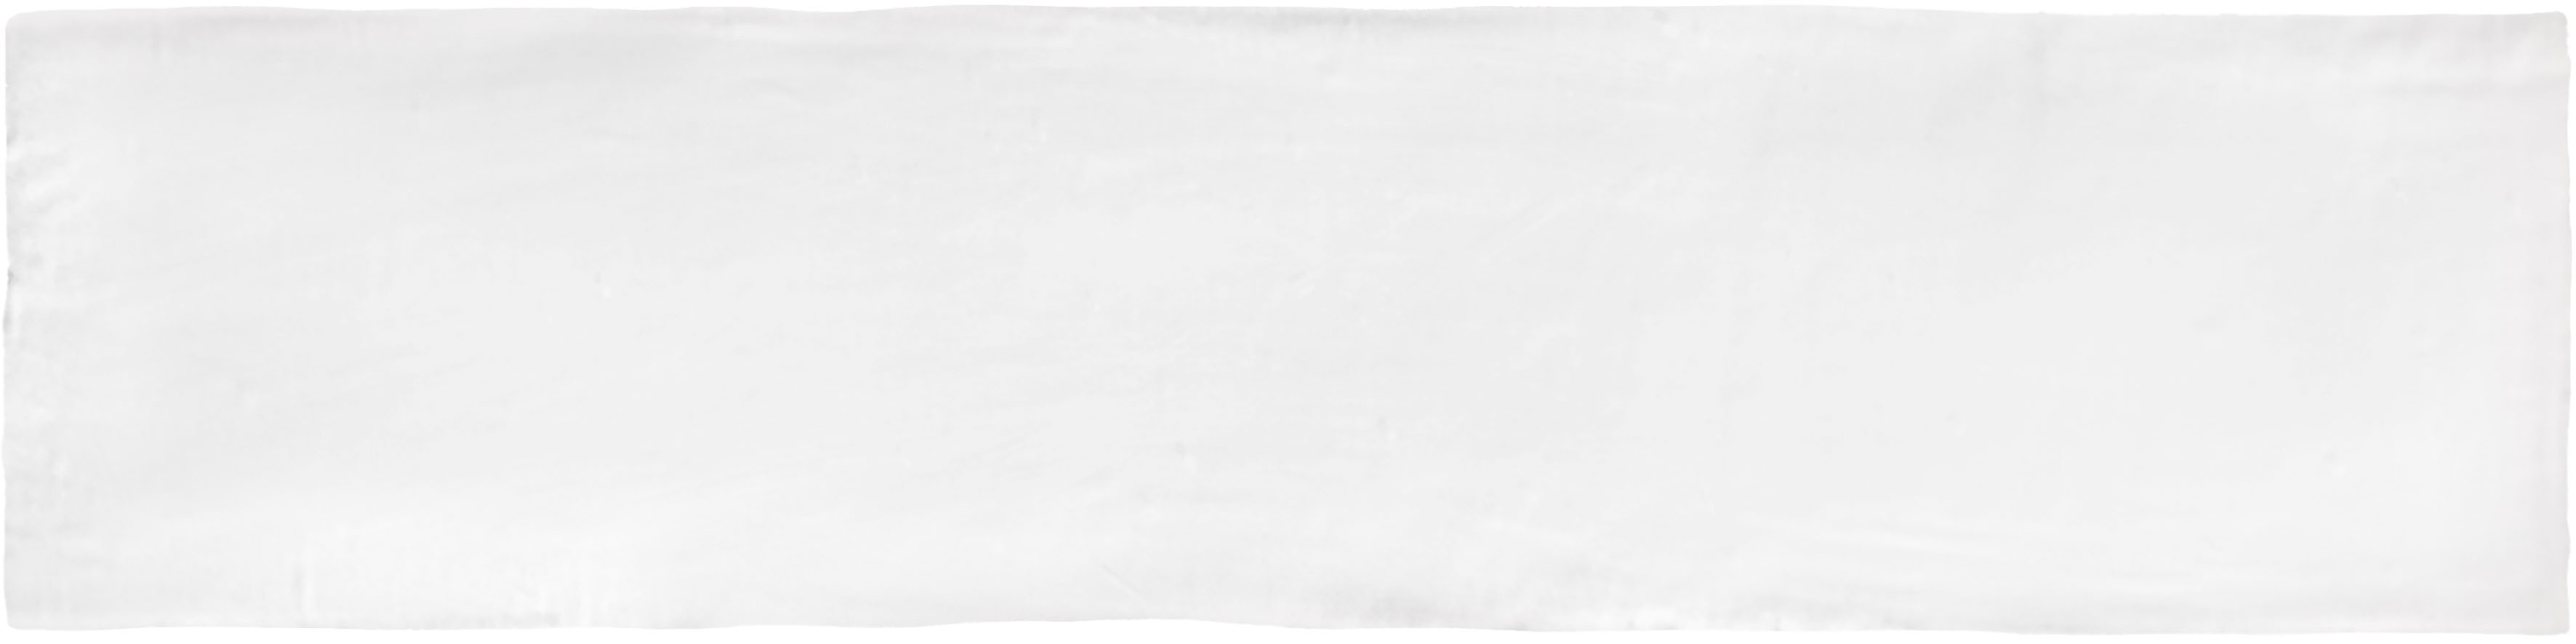 Catalea Gres Lund Metrofliesen Weiß matt 7,5x30 cm  